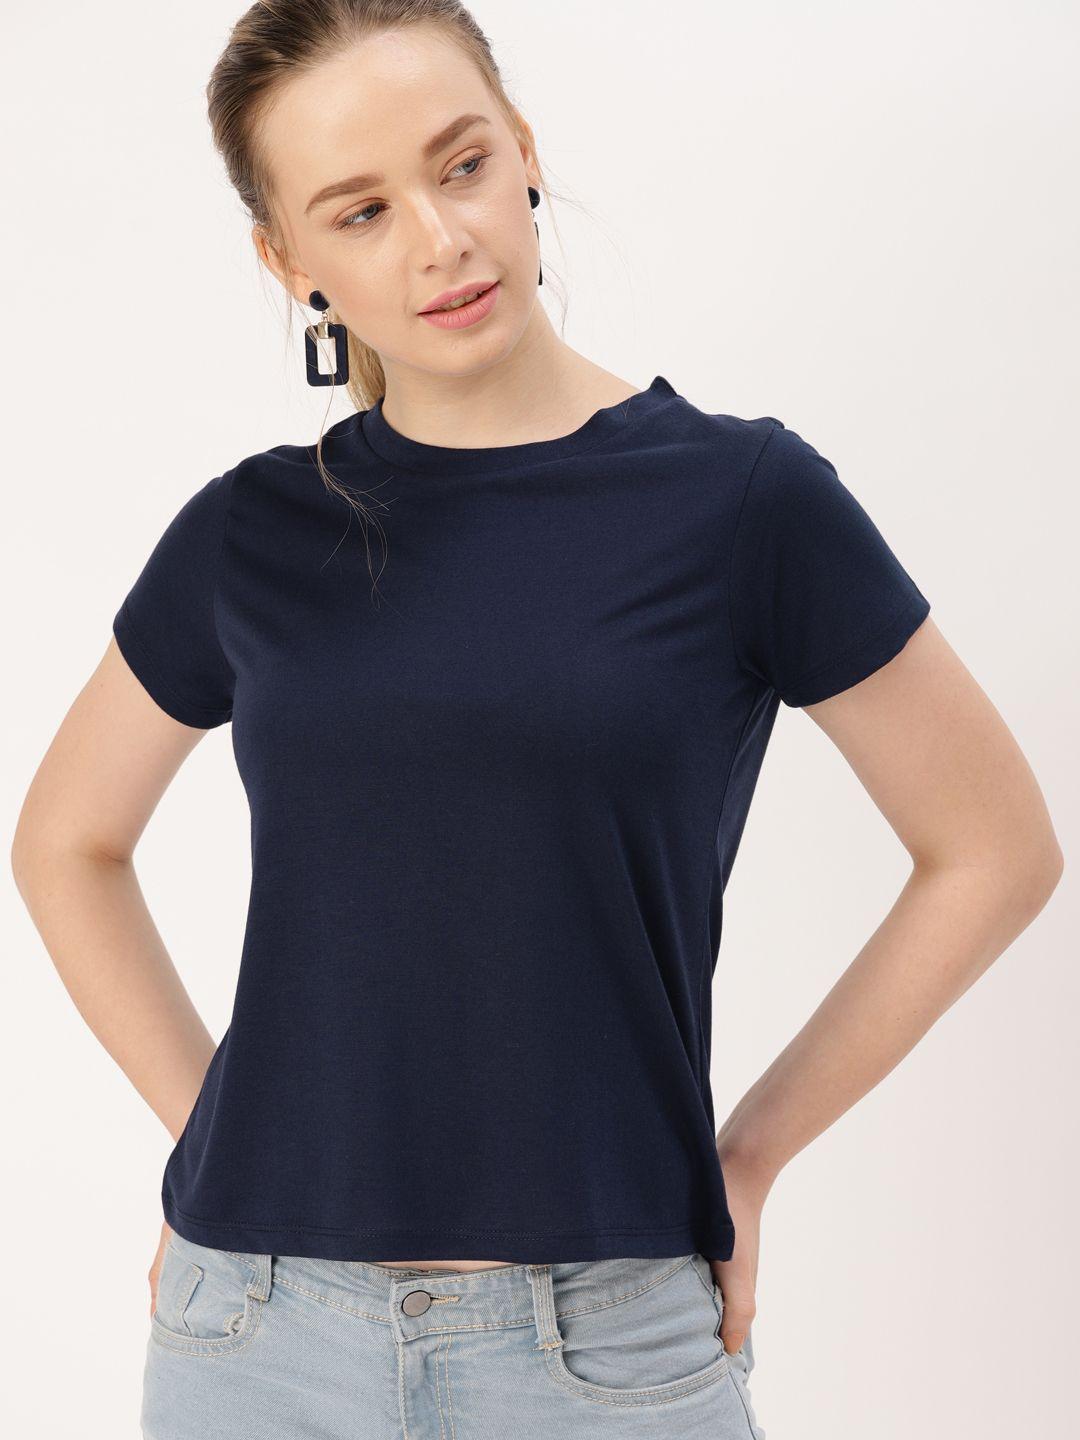 dressberry women navy blue solid round neck t-shirt